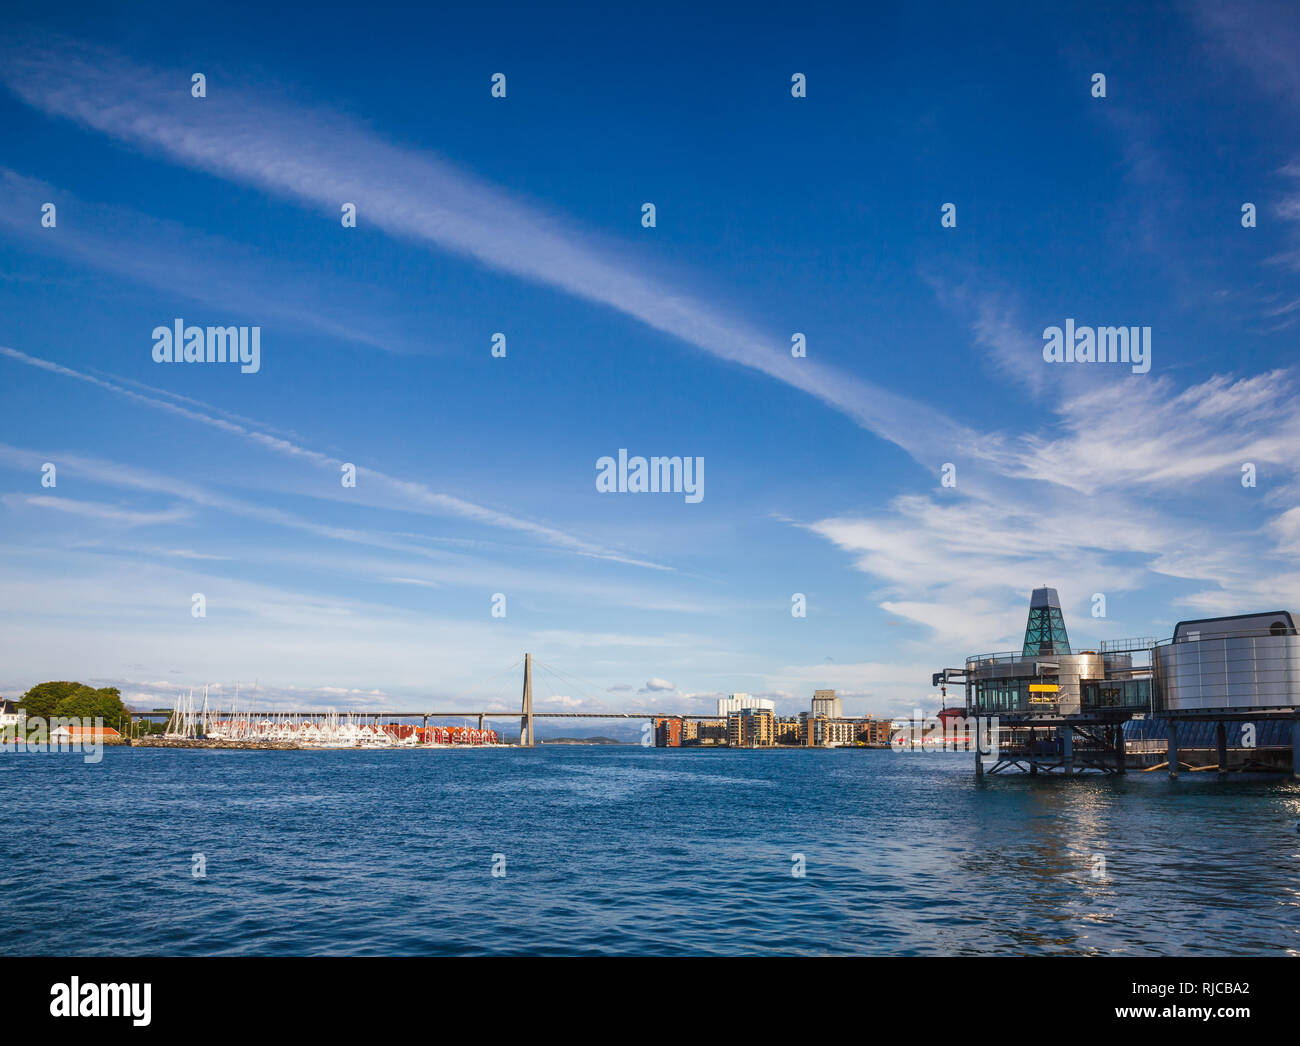 Panoramablick auf ostre Havn der Hafen von Stavanger bei Byfjorden Fjord mit Grasholmen Insel, Brücke und die norwegische Stadt Stavanger Petroleum Museum auf einem Stockfoto